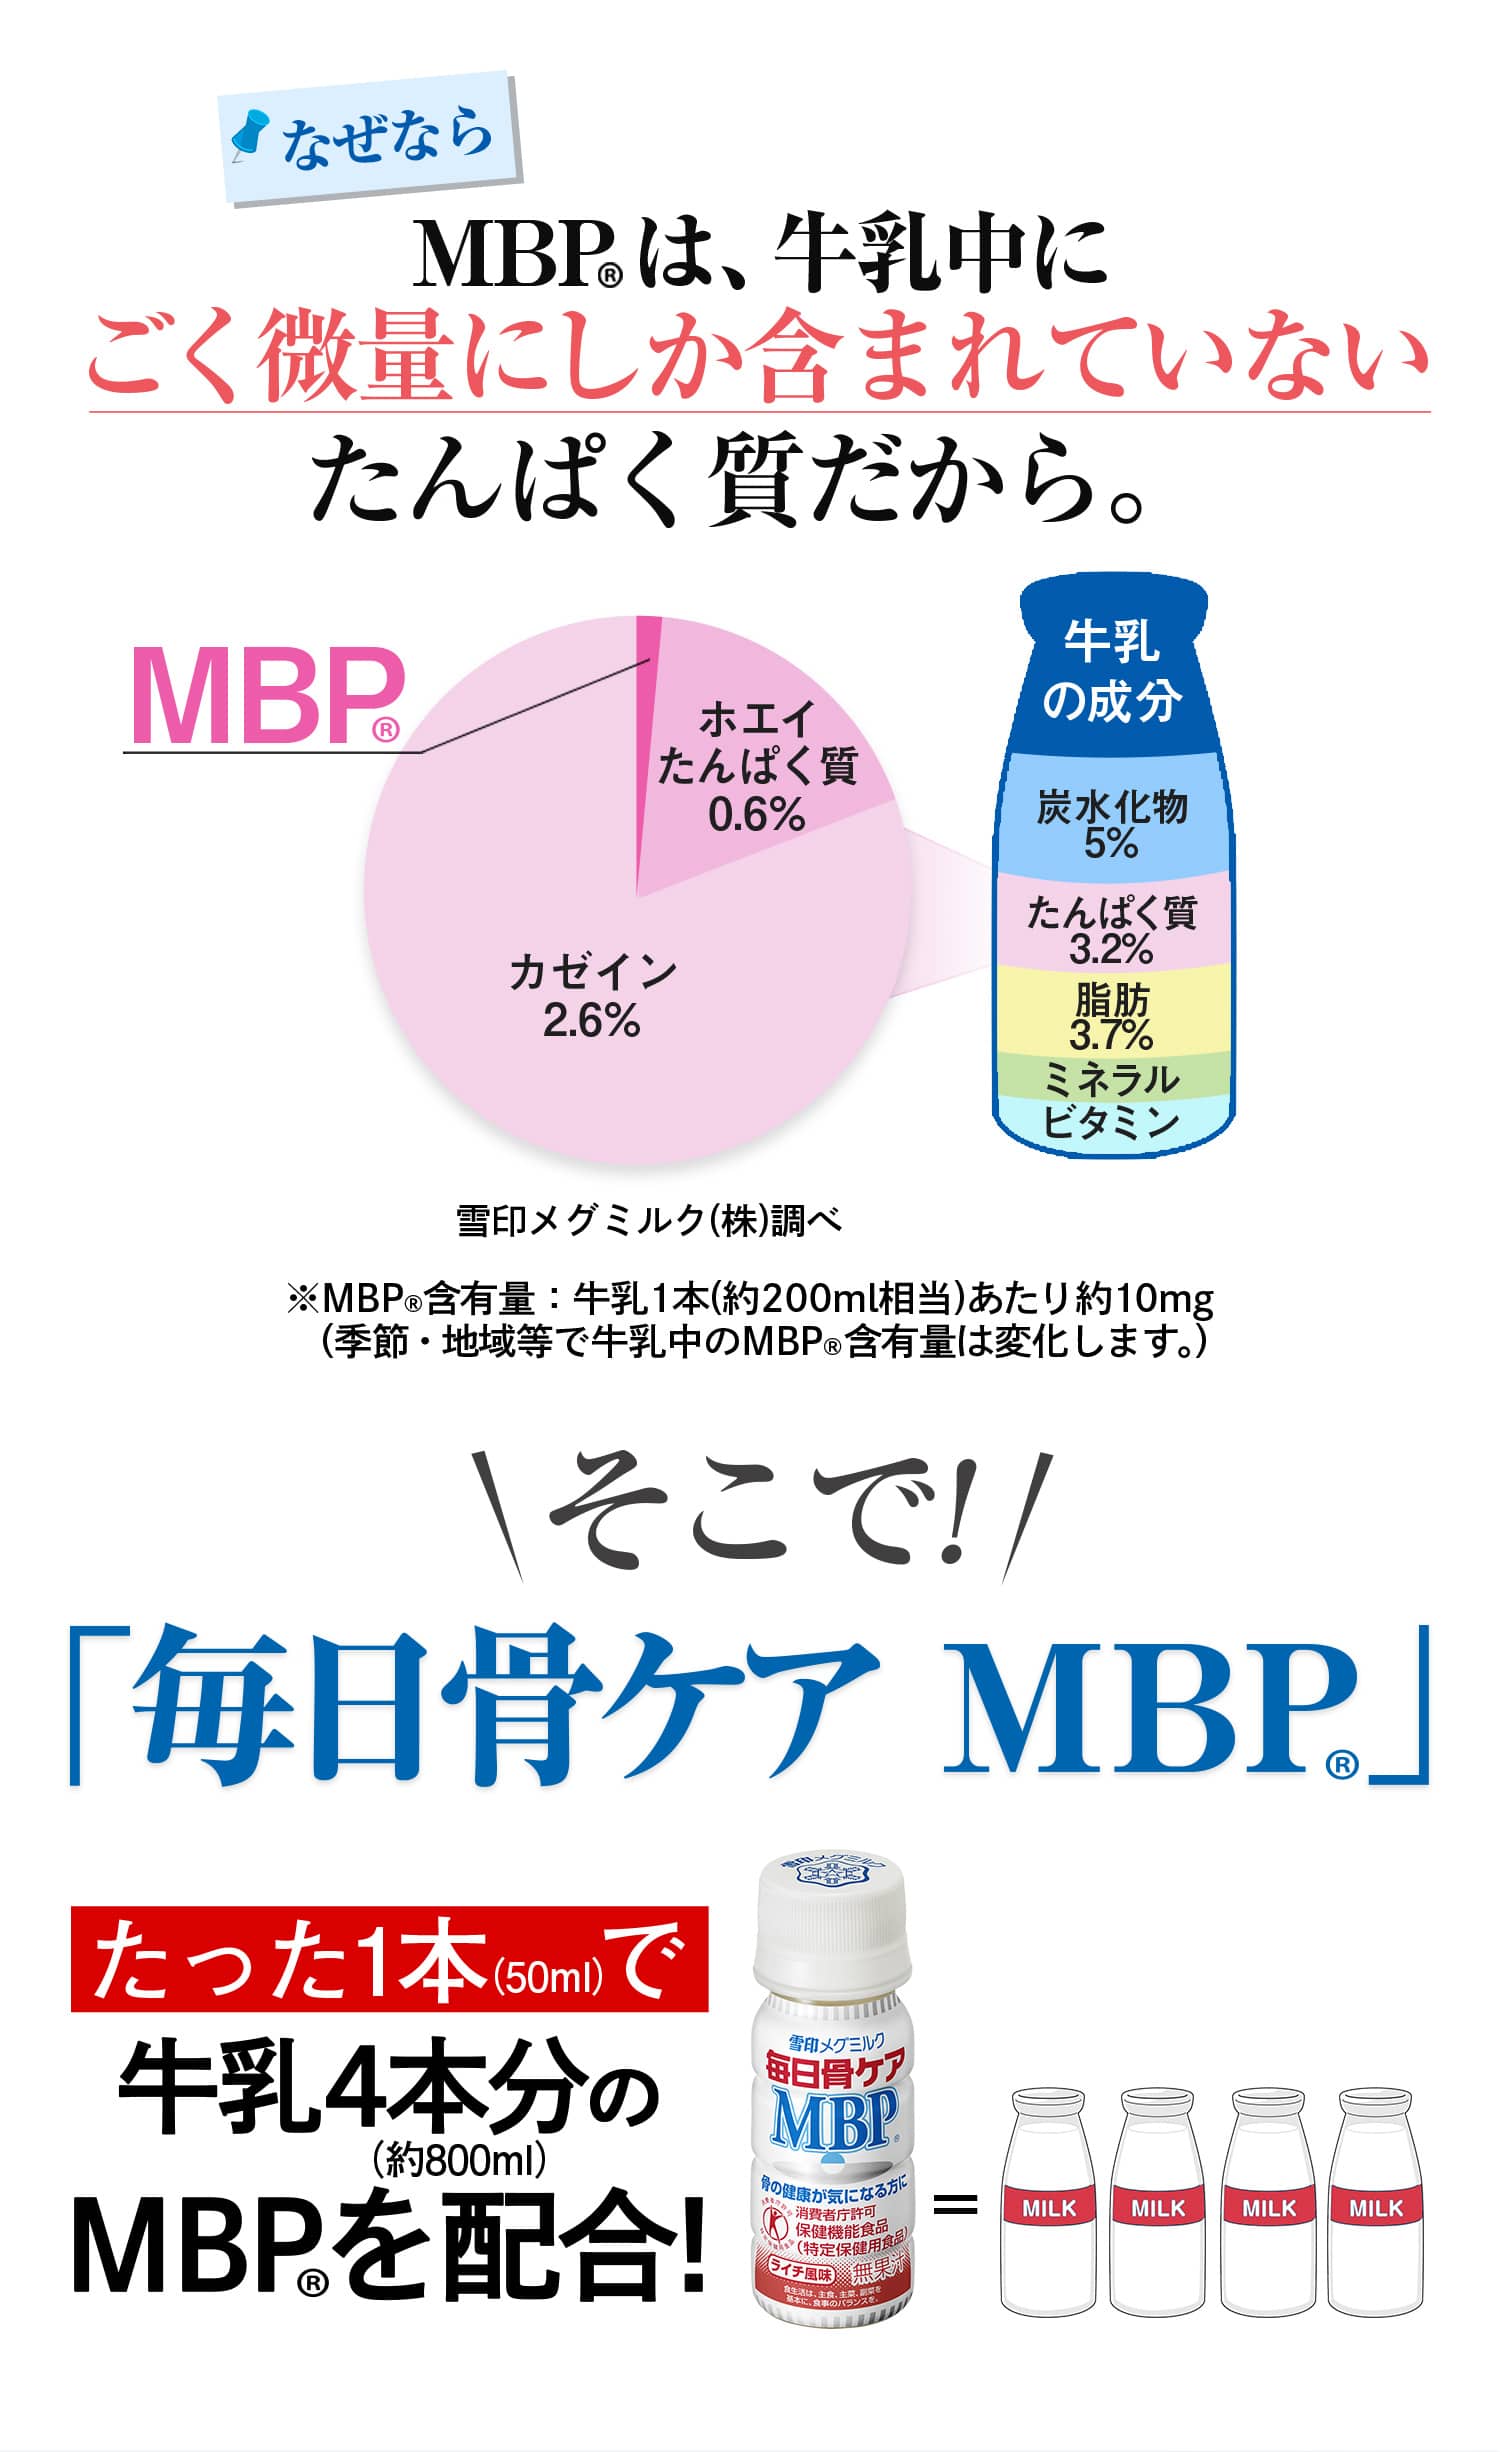 なぜならMBP(R)は、牛乳中にごく微量にしか含まれていないたんぱく質だから。そこで! 「毎日骨ケア MBP(R)」たった1本で牛乳約4本分のMBP(R)を配合!